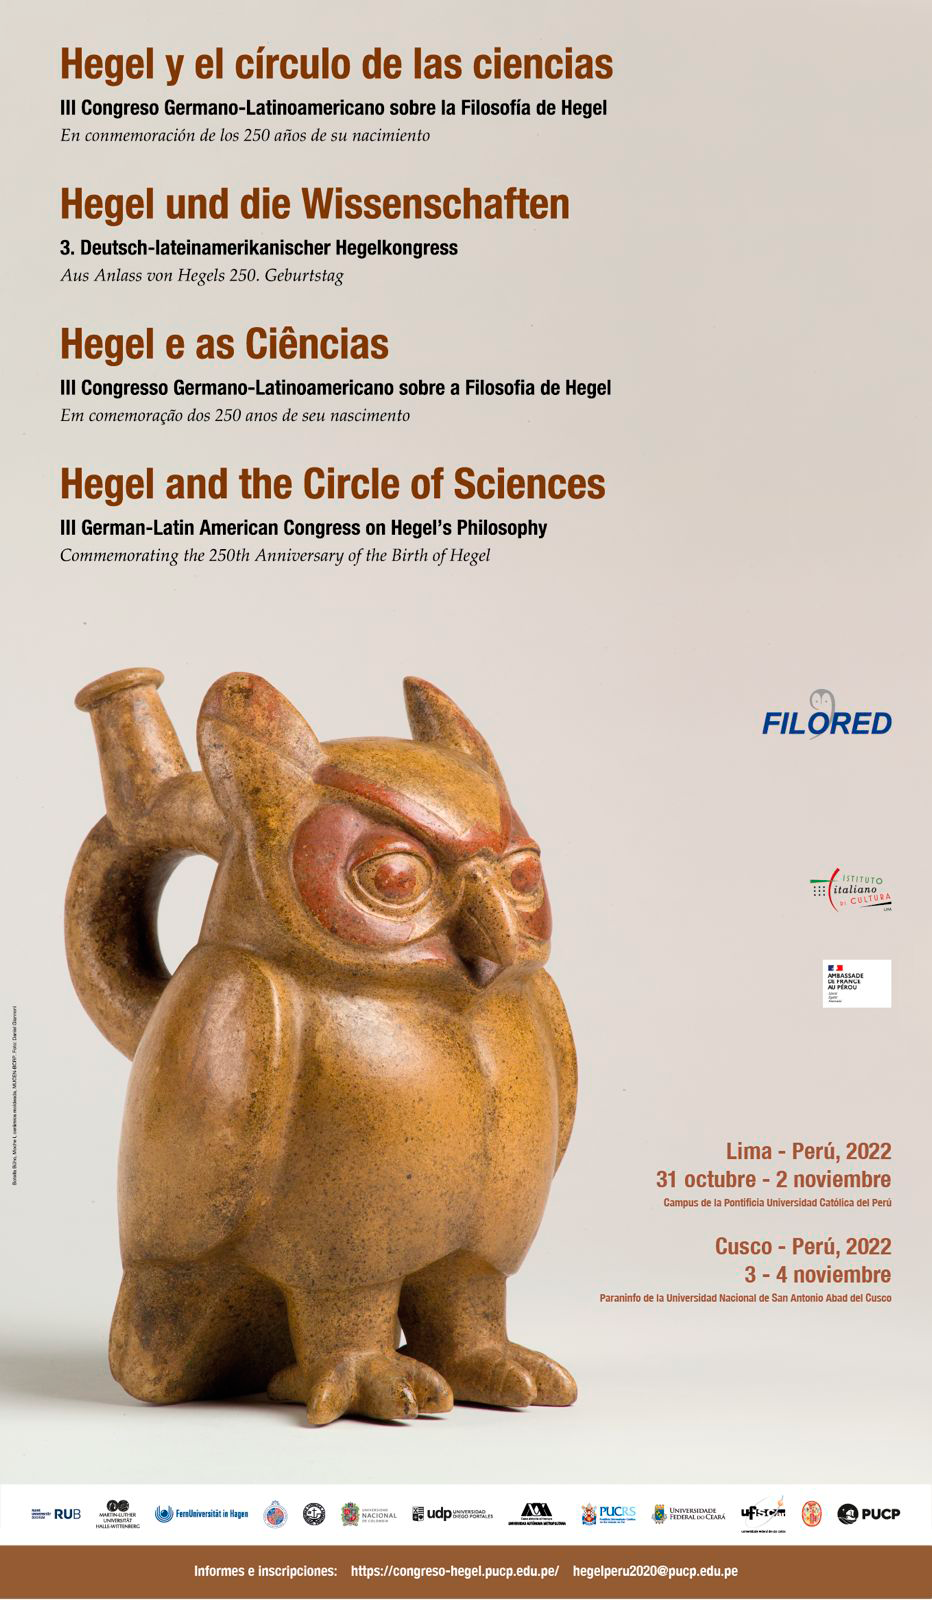 III Congreso Germano-Latinoamericano sobre la Filosofía de Hegel